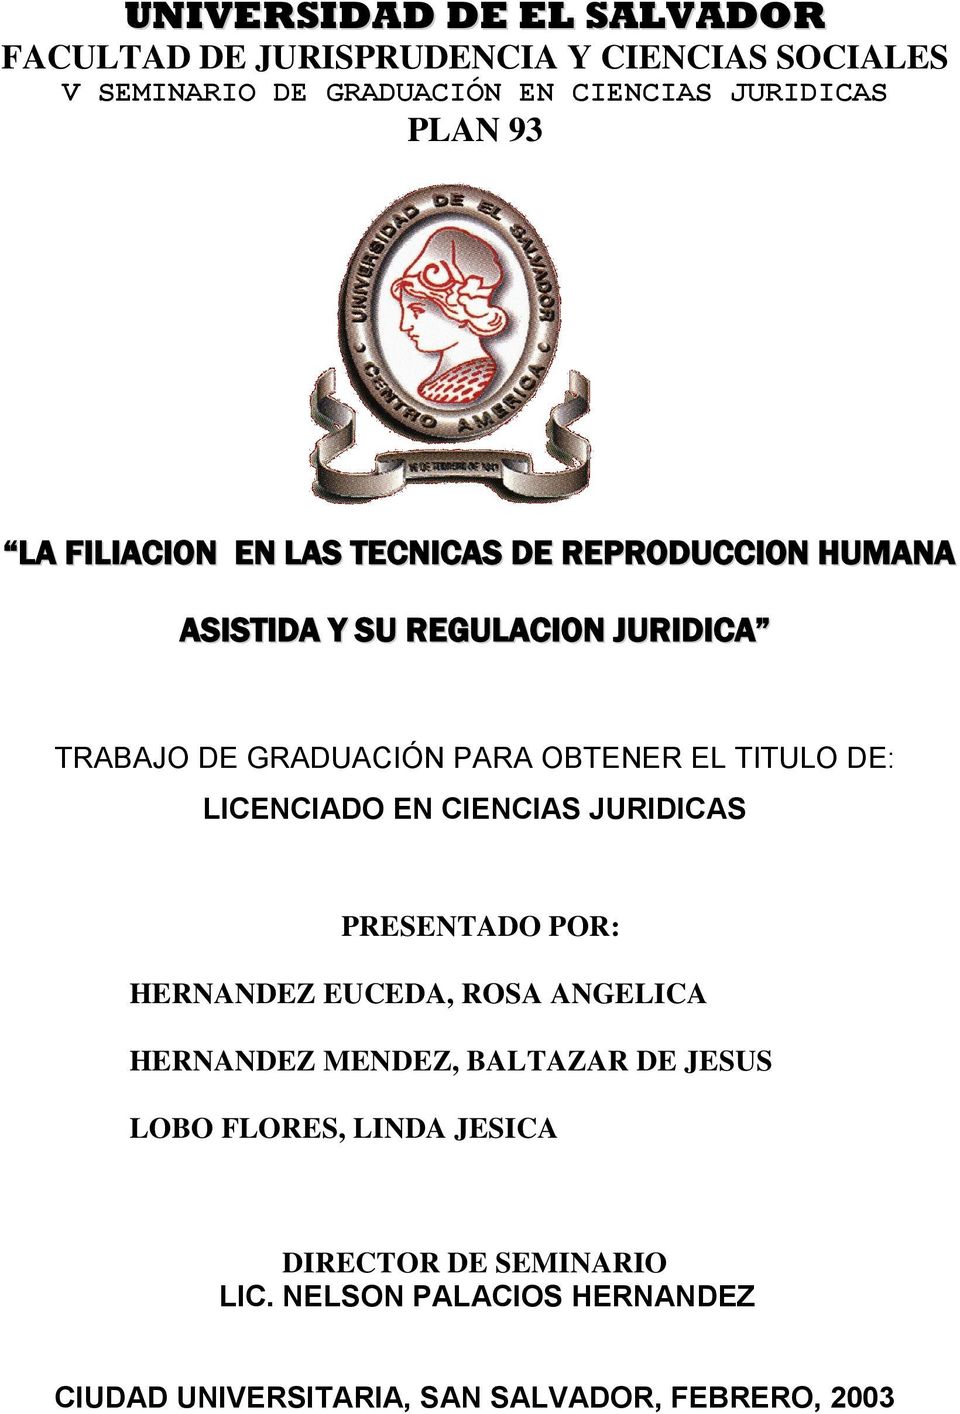 TITULO DE: LICENCIADO EN CIENCIAS JURIDICAS PRESENTADO POR: HERNANDEZ EUCEDA, ROSA ANGELICA HERNANDEZ MENDEZ, BALTAZAR DE JESUS